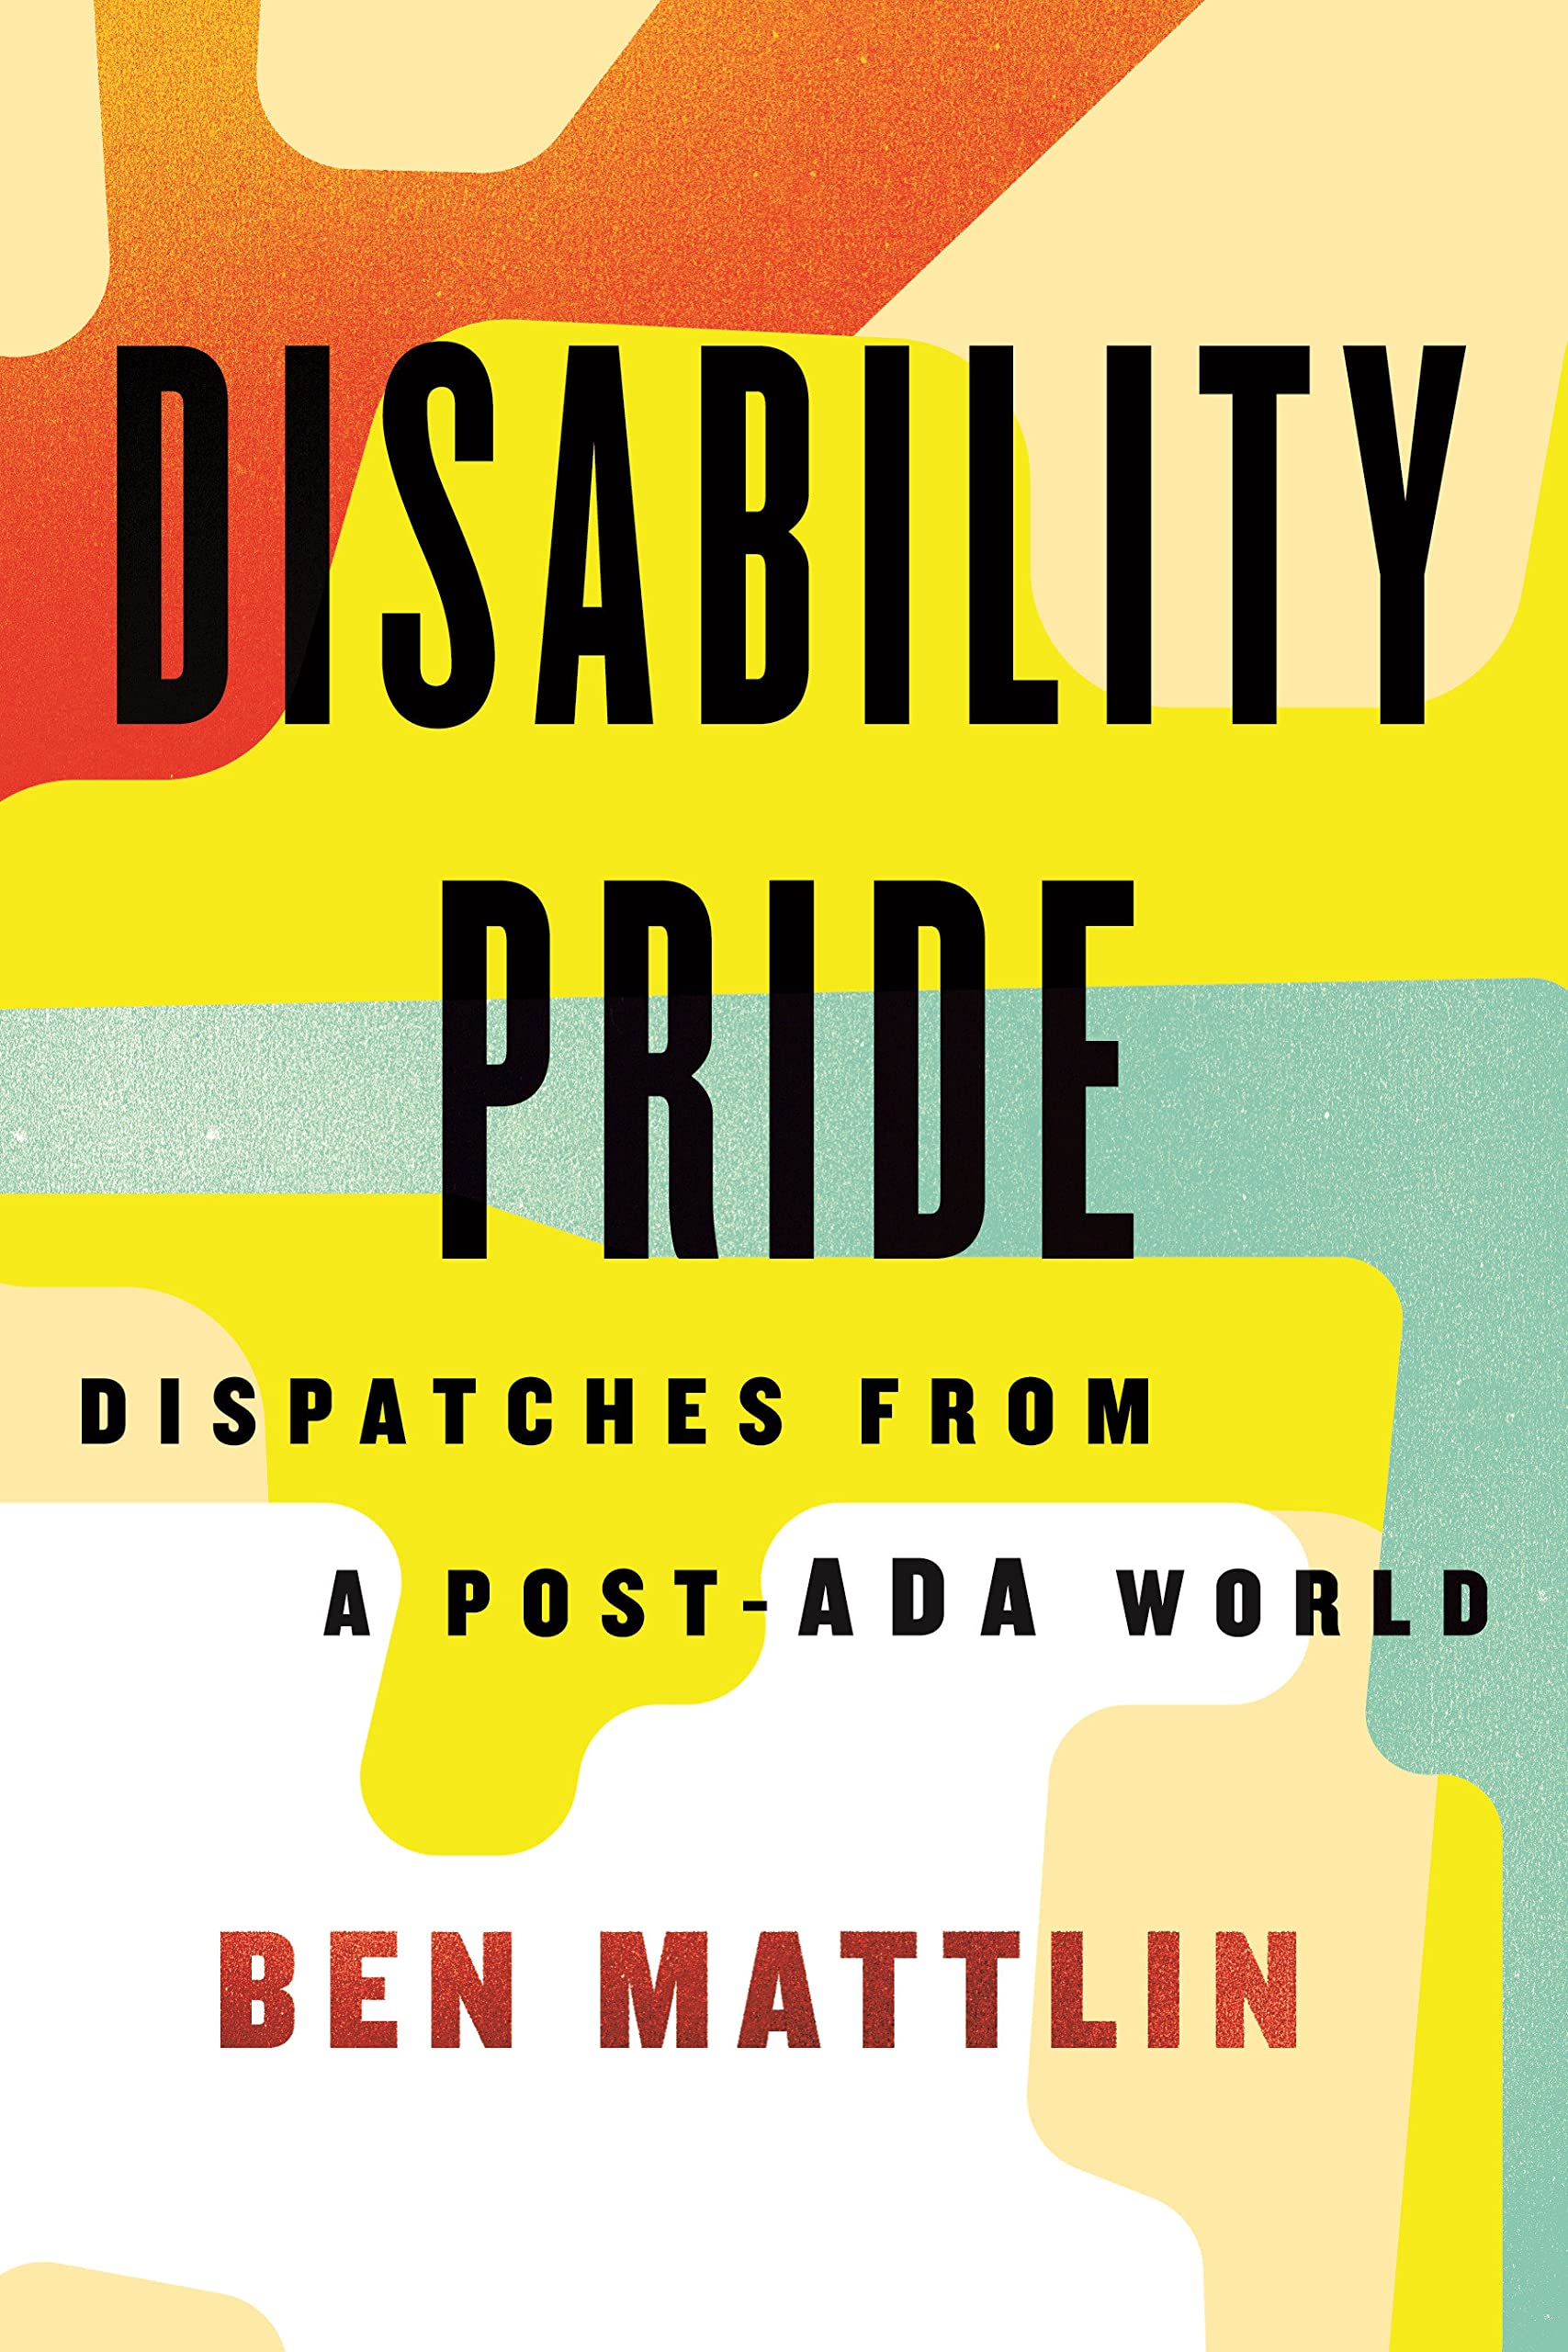 Disability Pride by Ben Mattlin PDF Download